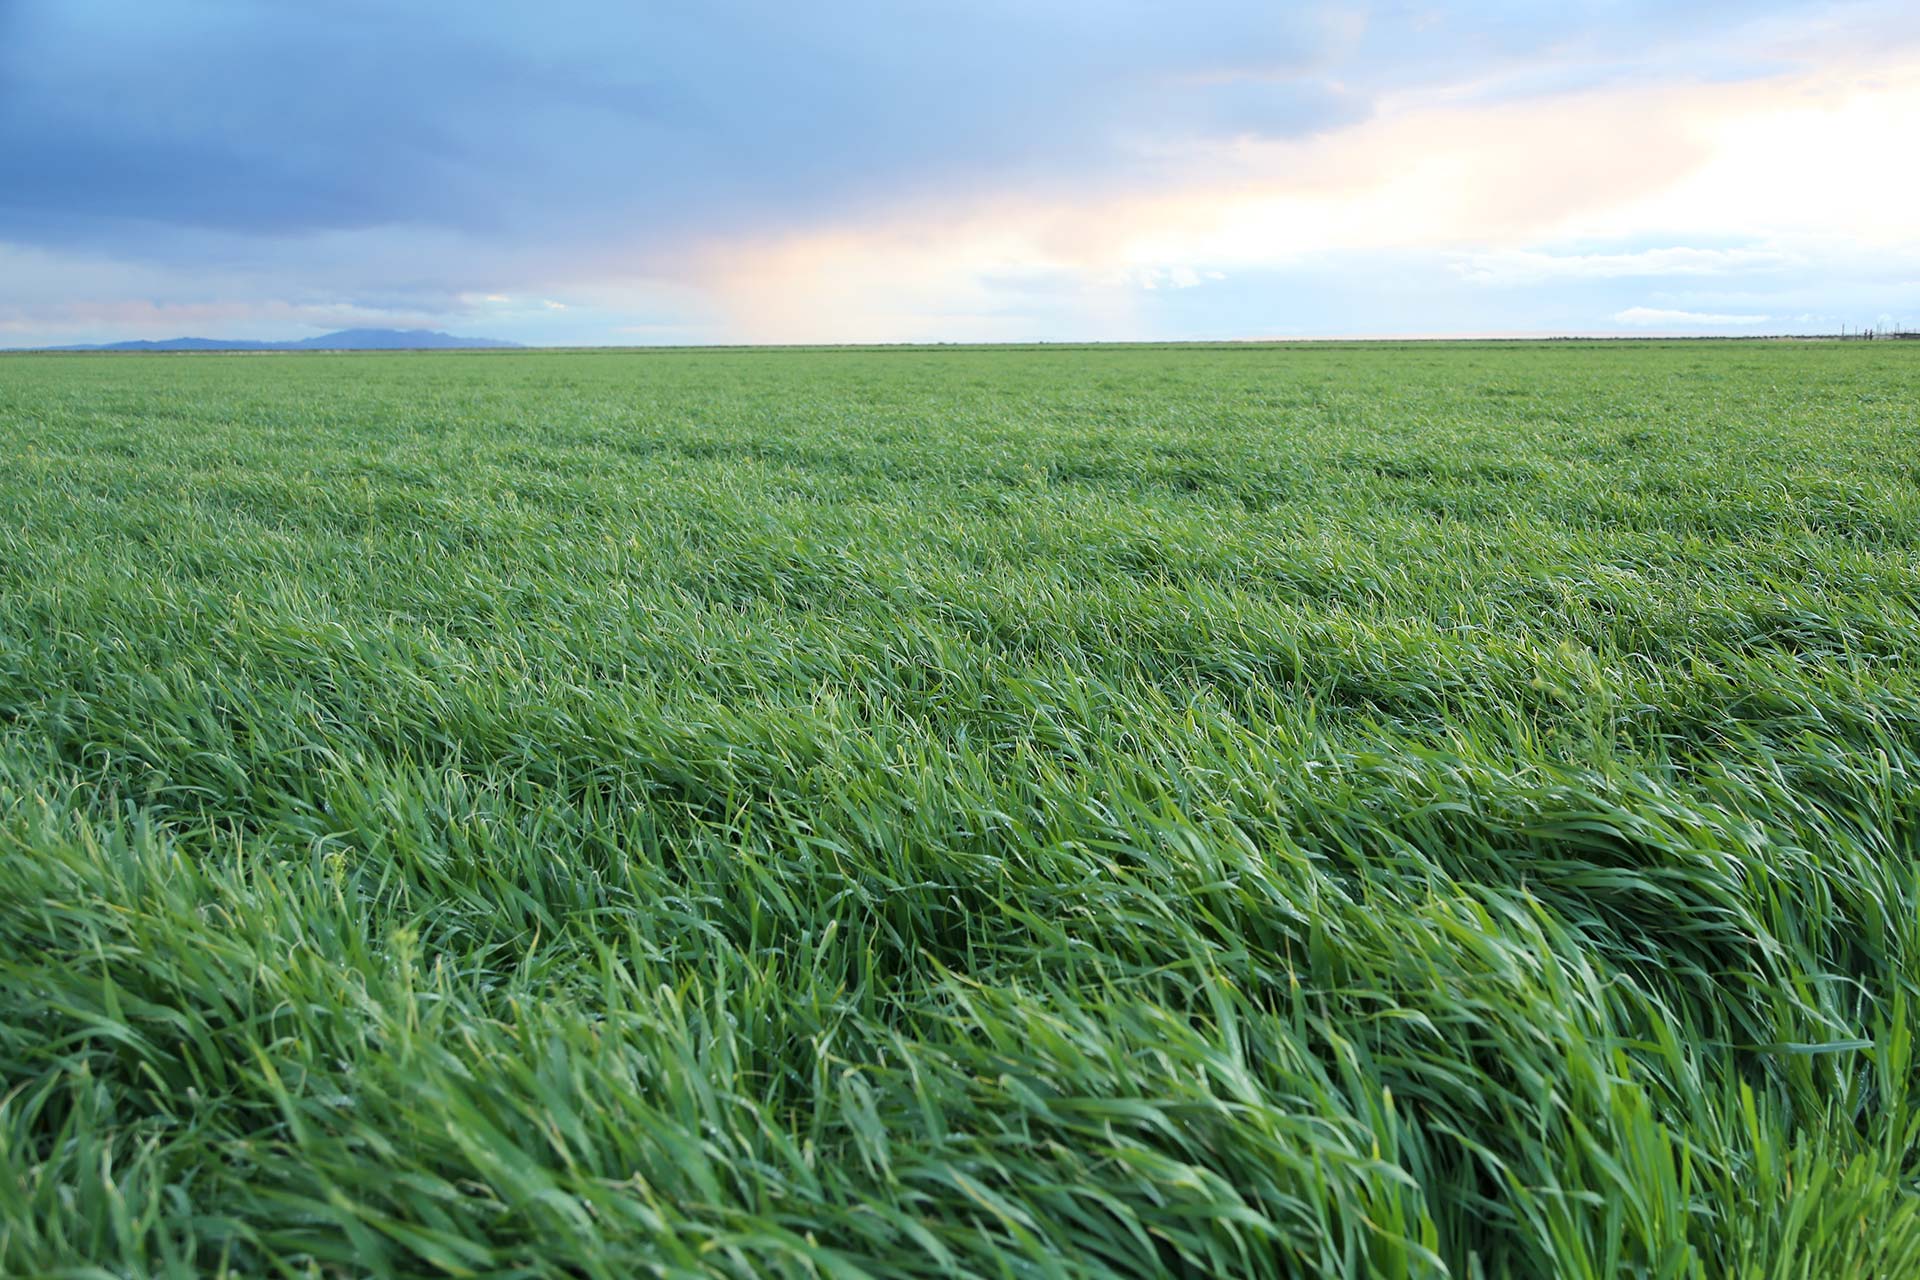 グリーンの原料となる大麦若葉は、無農薬・自然農法で育てています